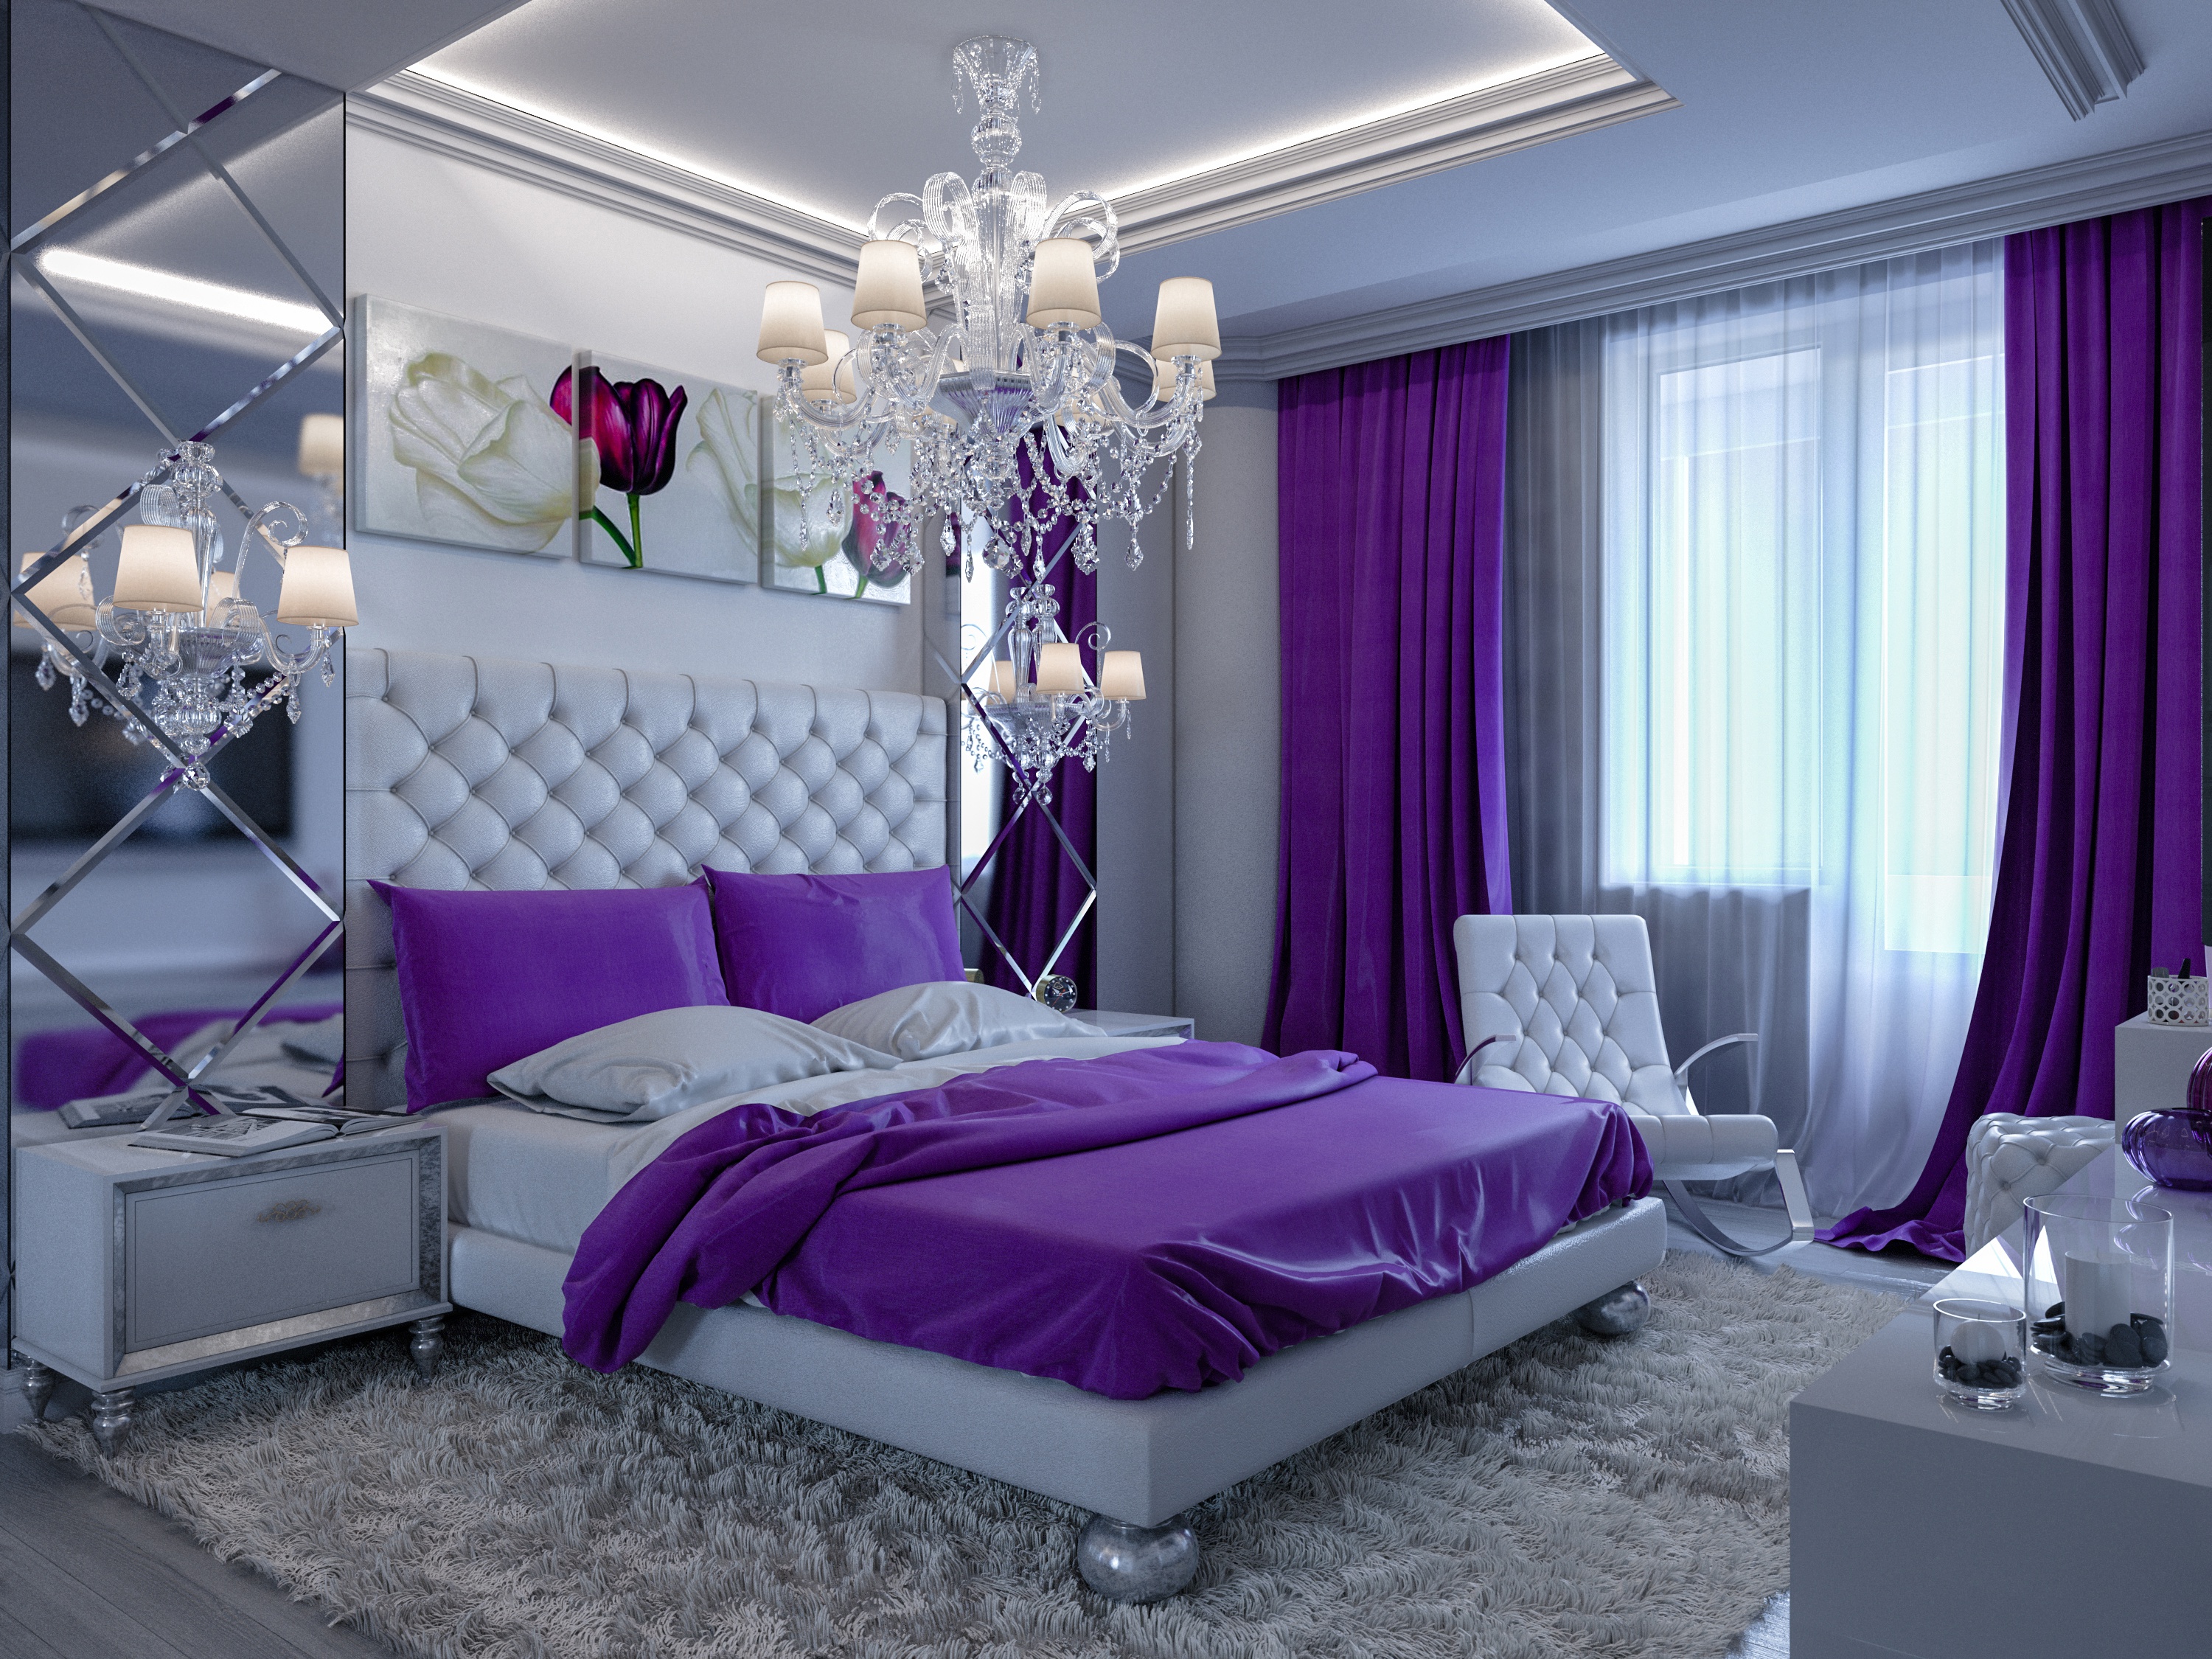 chandelier, bedroom, man made, room, bed, furniture